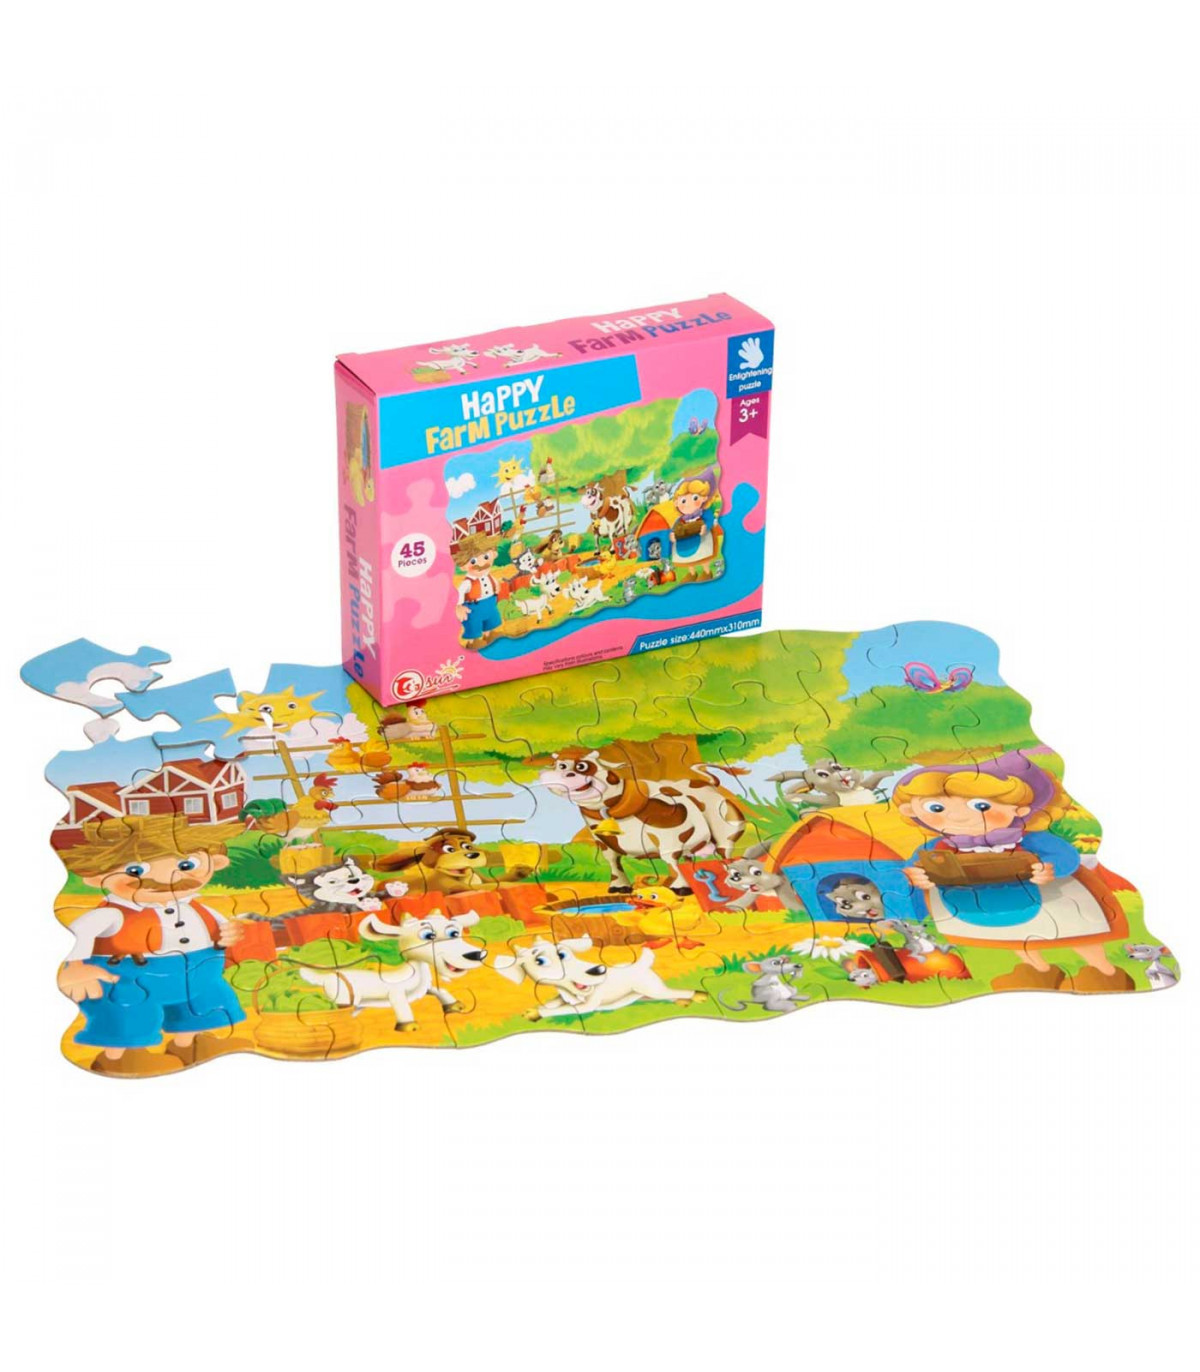 Juegos de Puzzles infantiles, rompecabezas para niños online gratis